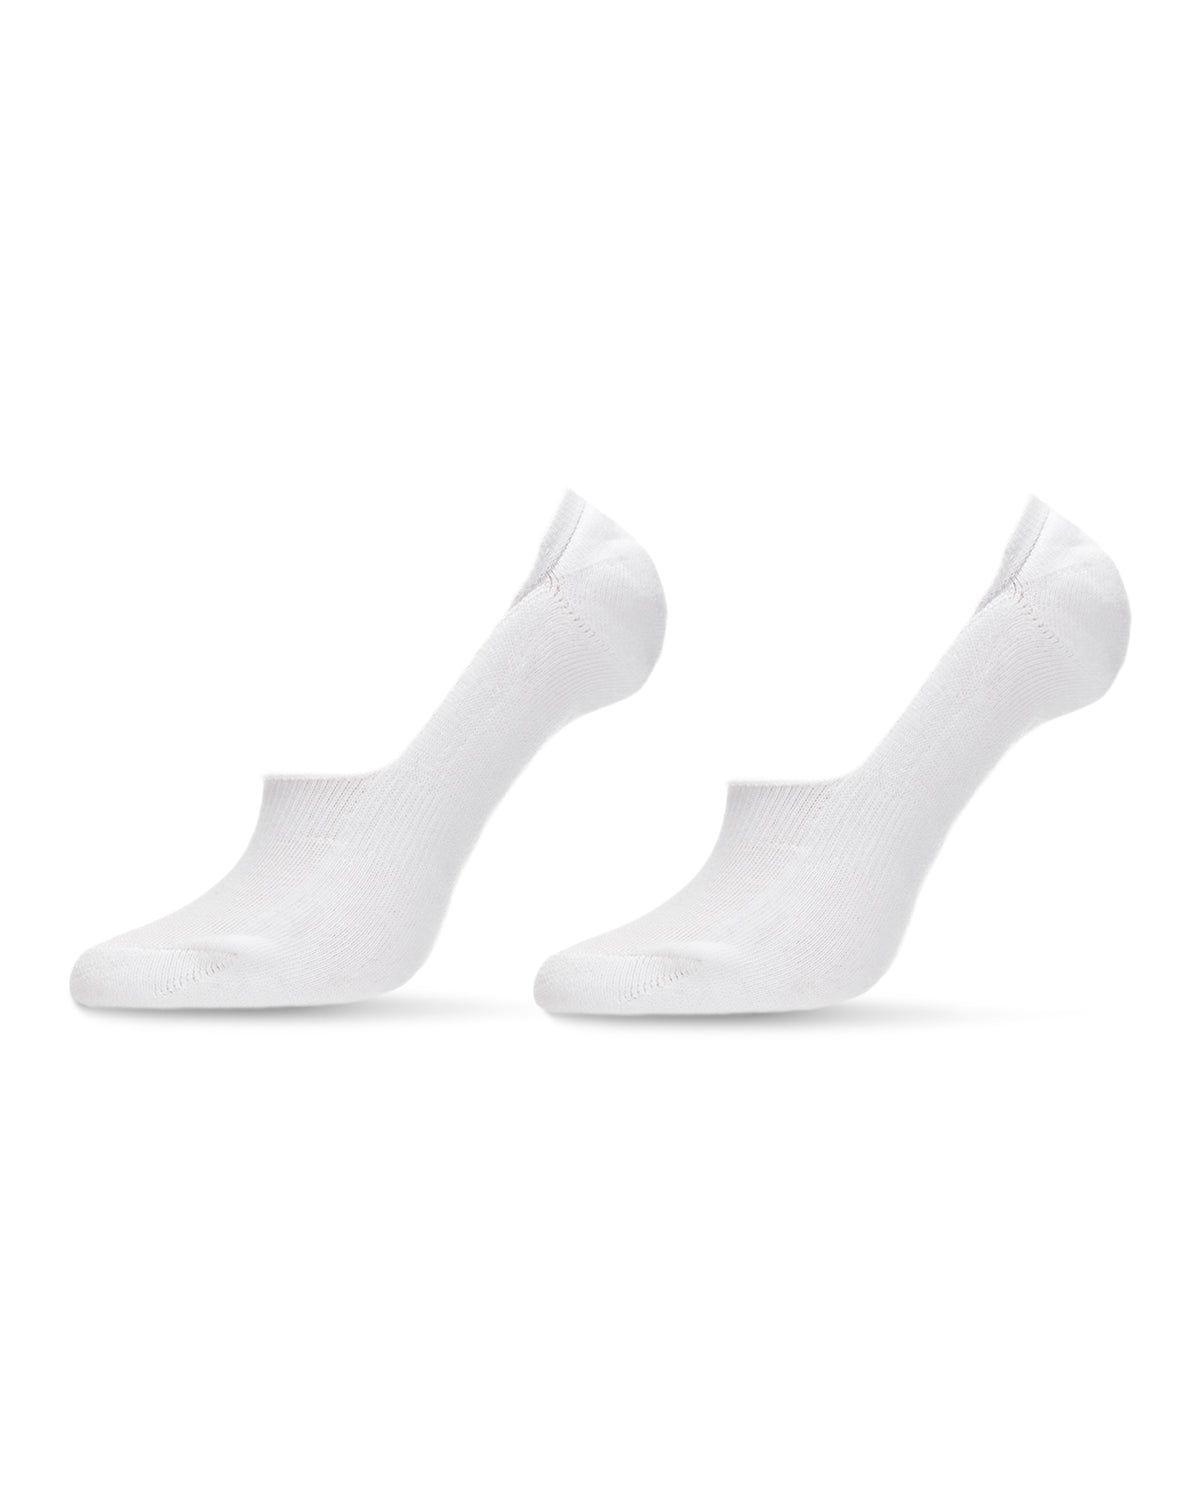 Penti's 2in1 Liner Socks